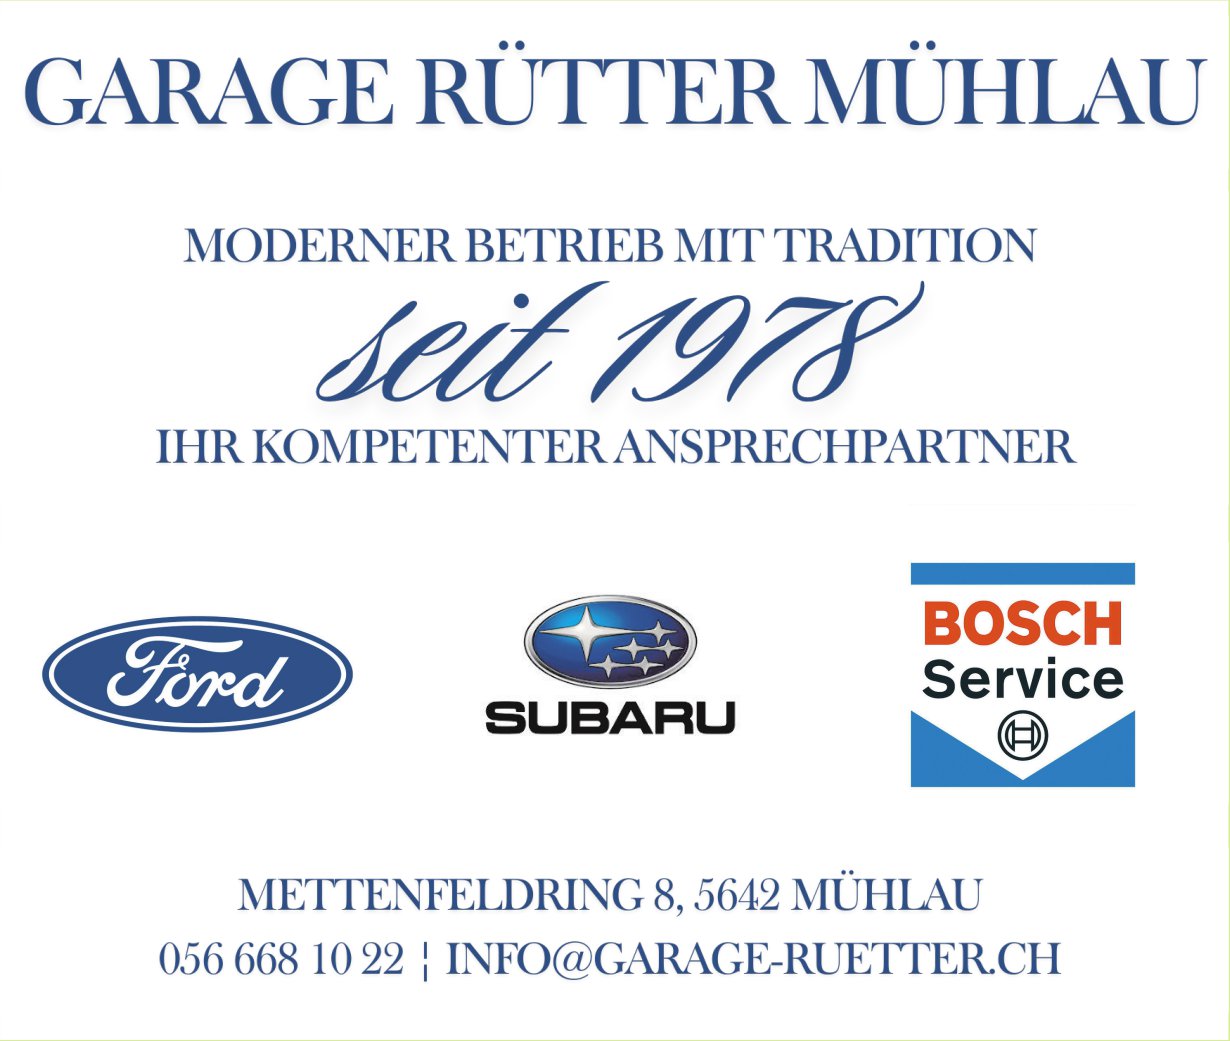 Garage Rütter, Mühlau - Moderner Betrieb mit Tradition